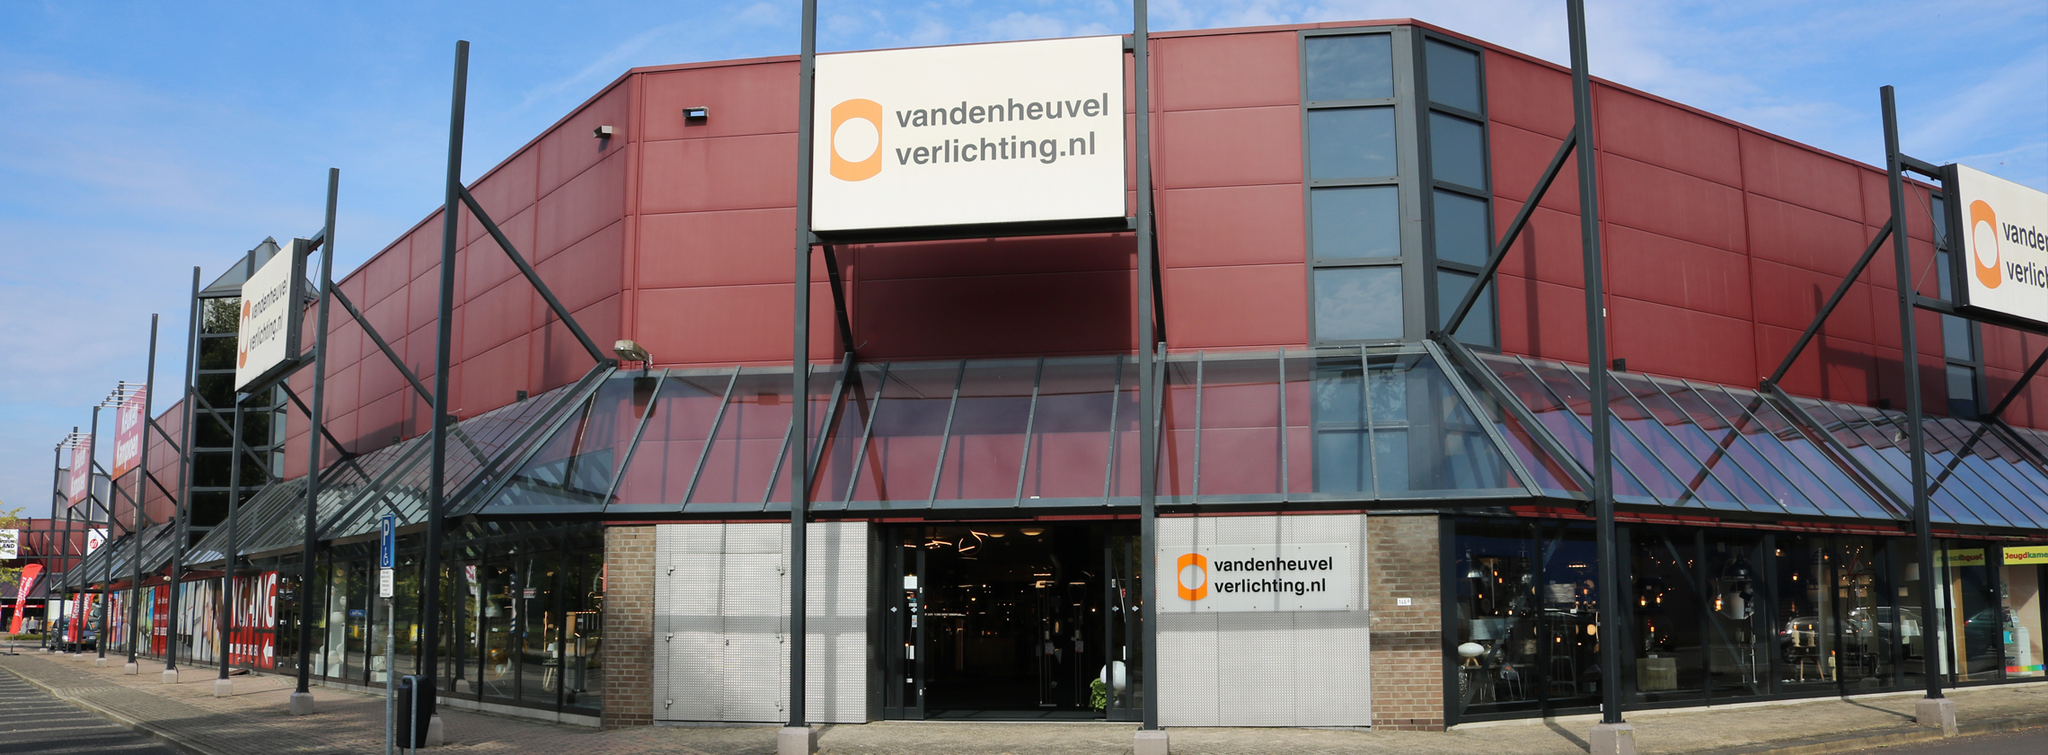 Pigment Notebook Gematigd Van den Heuvel Heerlen, de verlichtingsspeciaalzaak in Limburg - Van den  Heuvel Verlichting